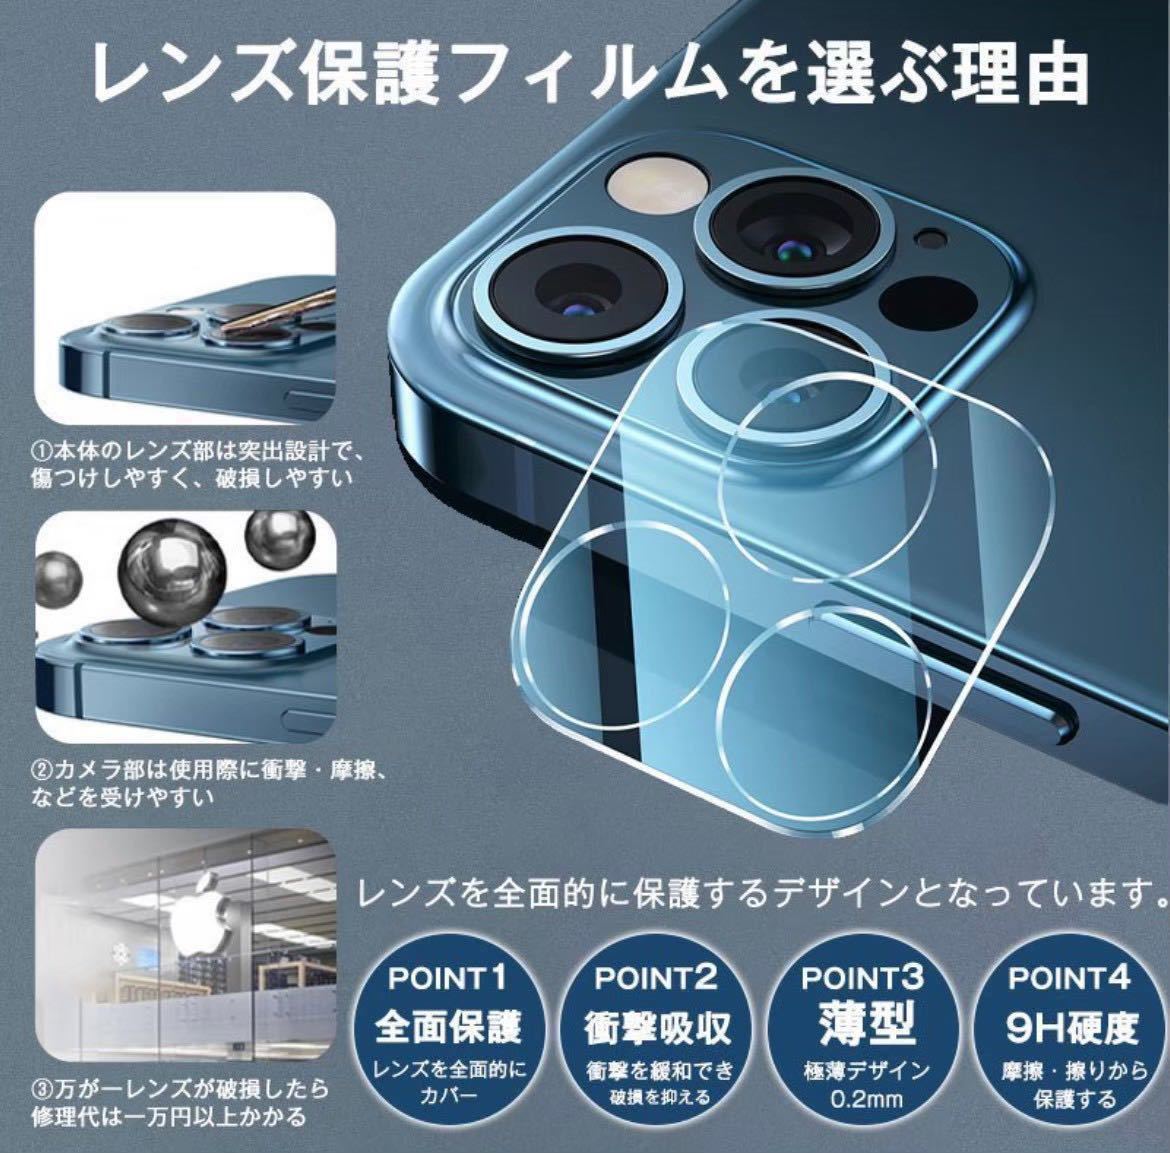 【iPhone11Pro】ブルーライトカットフィルム＋カメラ保護フィルム